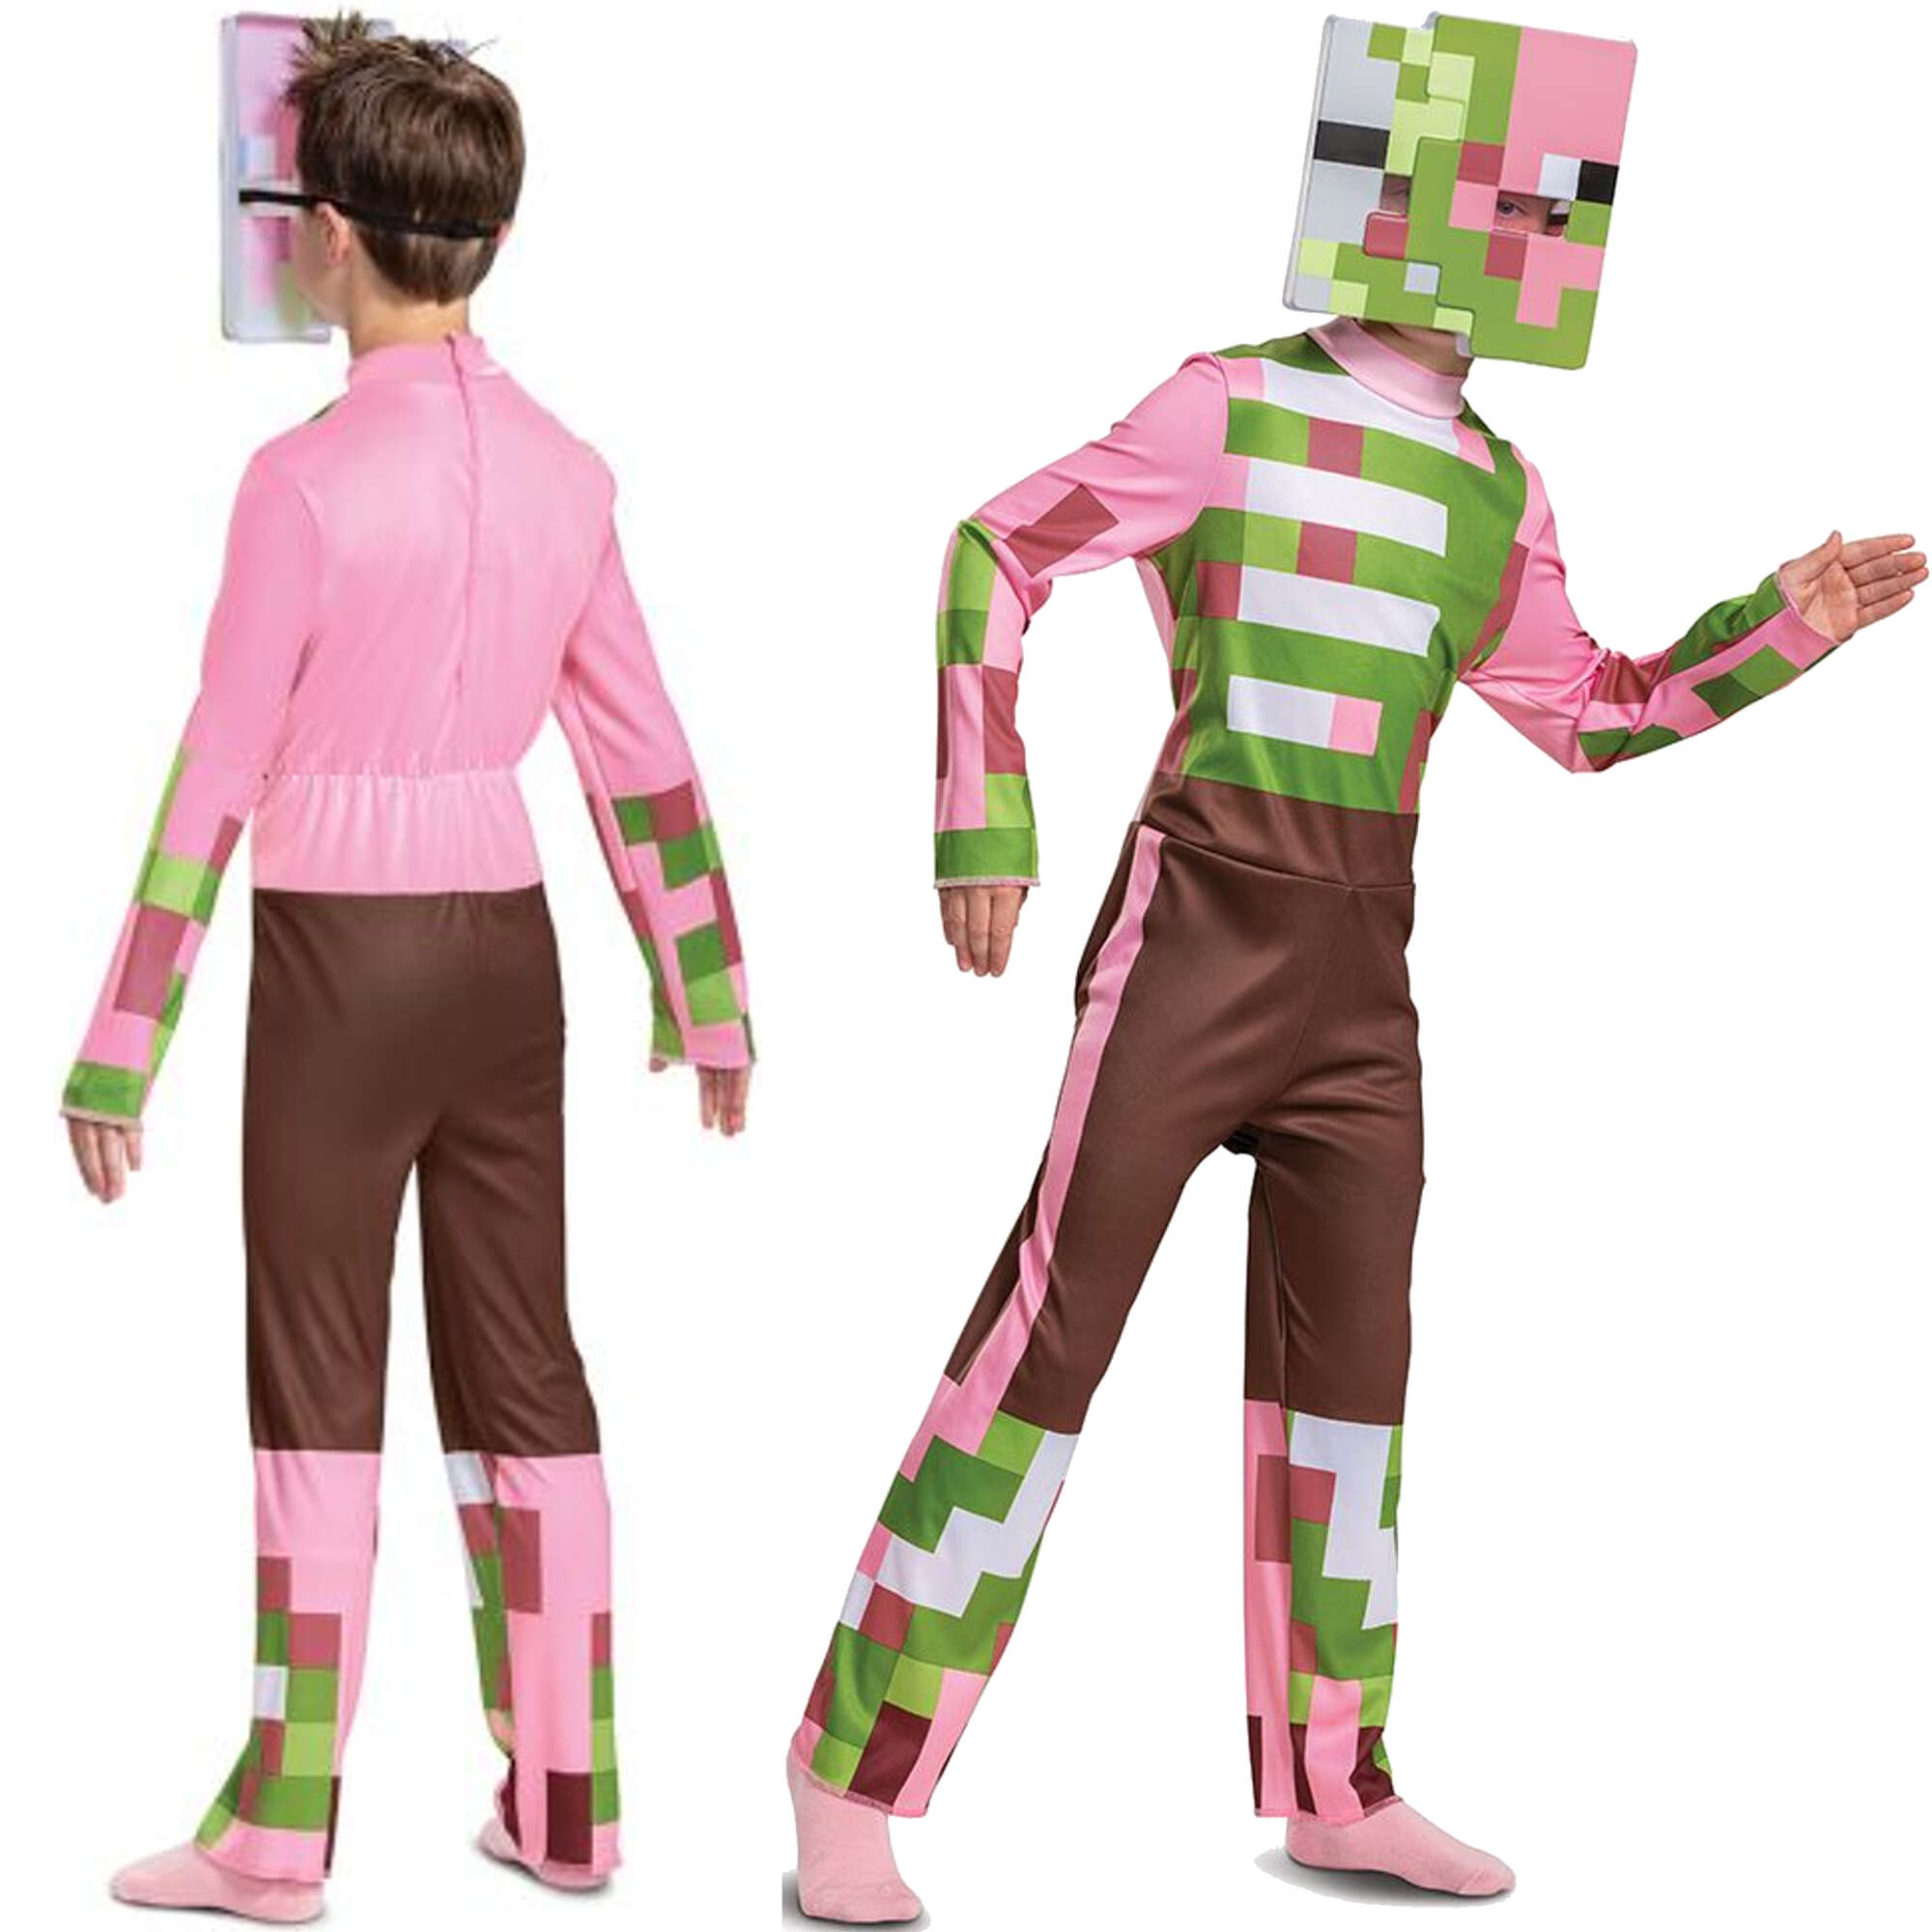 Minecraft strj karnawaowy dla chopca Zombie Pigman kostium przebranie 134-146 cm (10-12 lat)